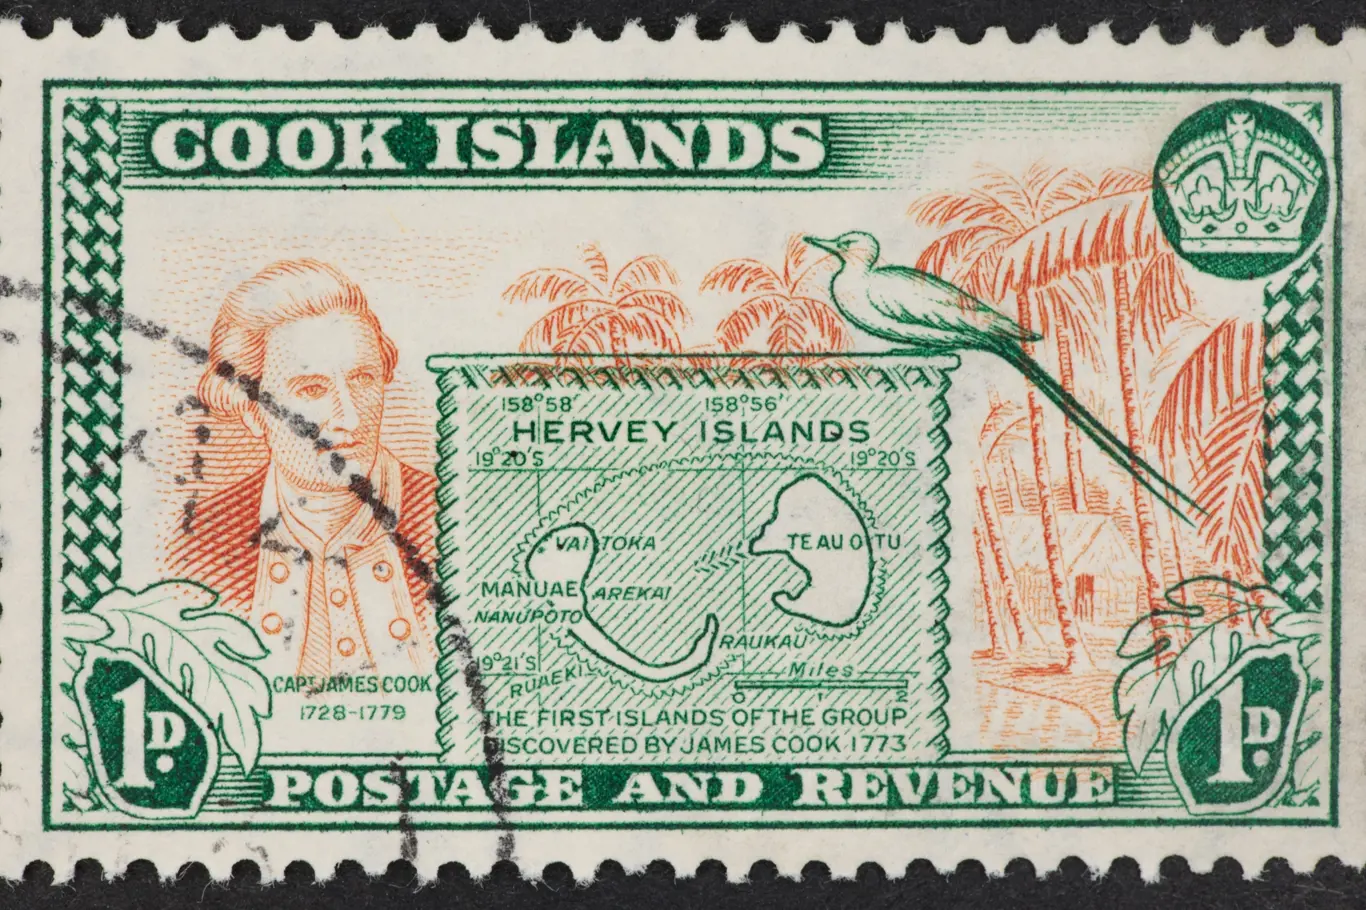 Poštovní známka ilustruje objevné plavny kapitána Cooka